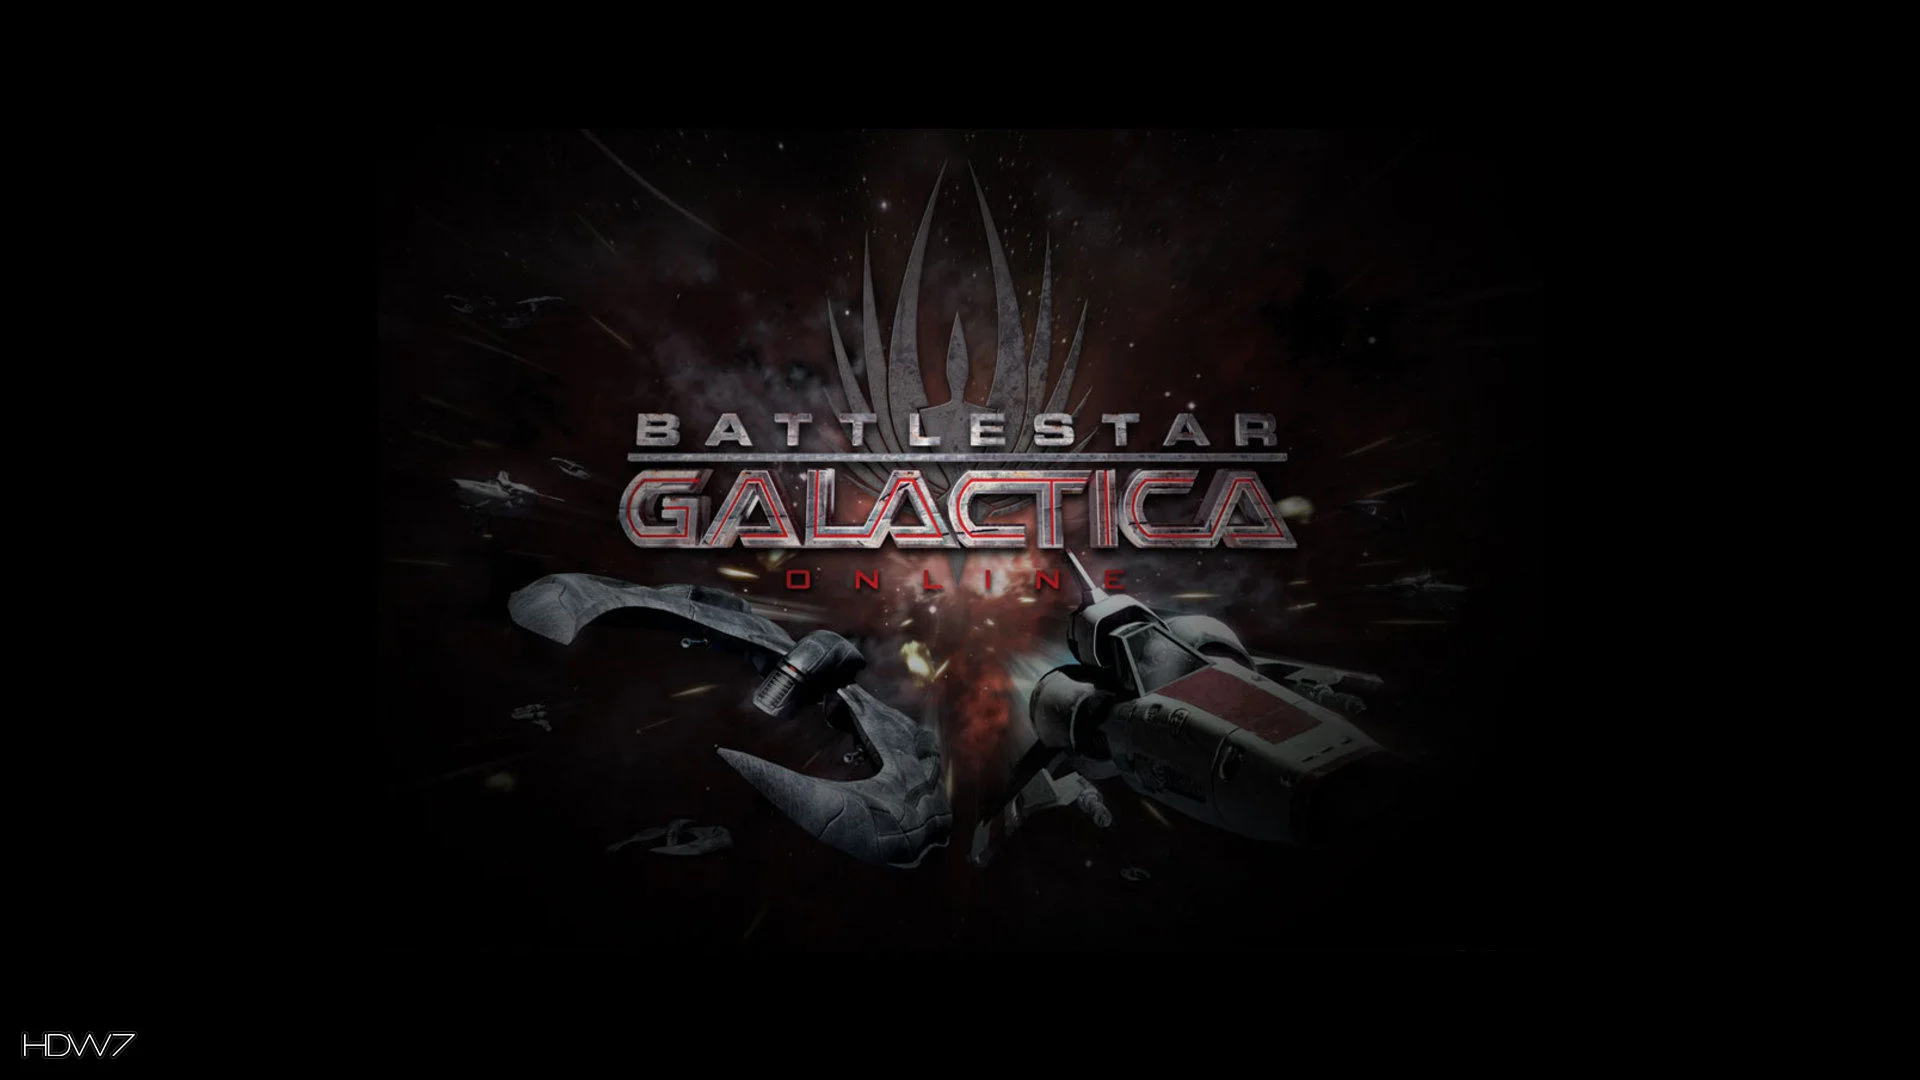 Battlestar galactica online battlestar galactica online widescreen hd wallpaper